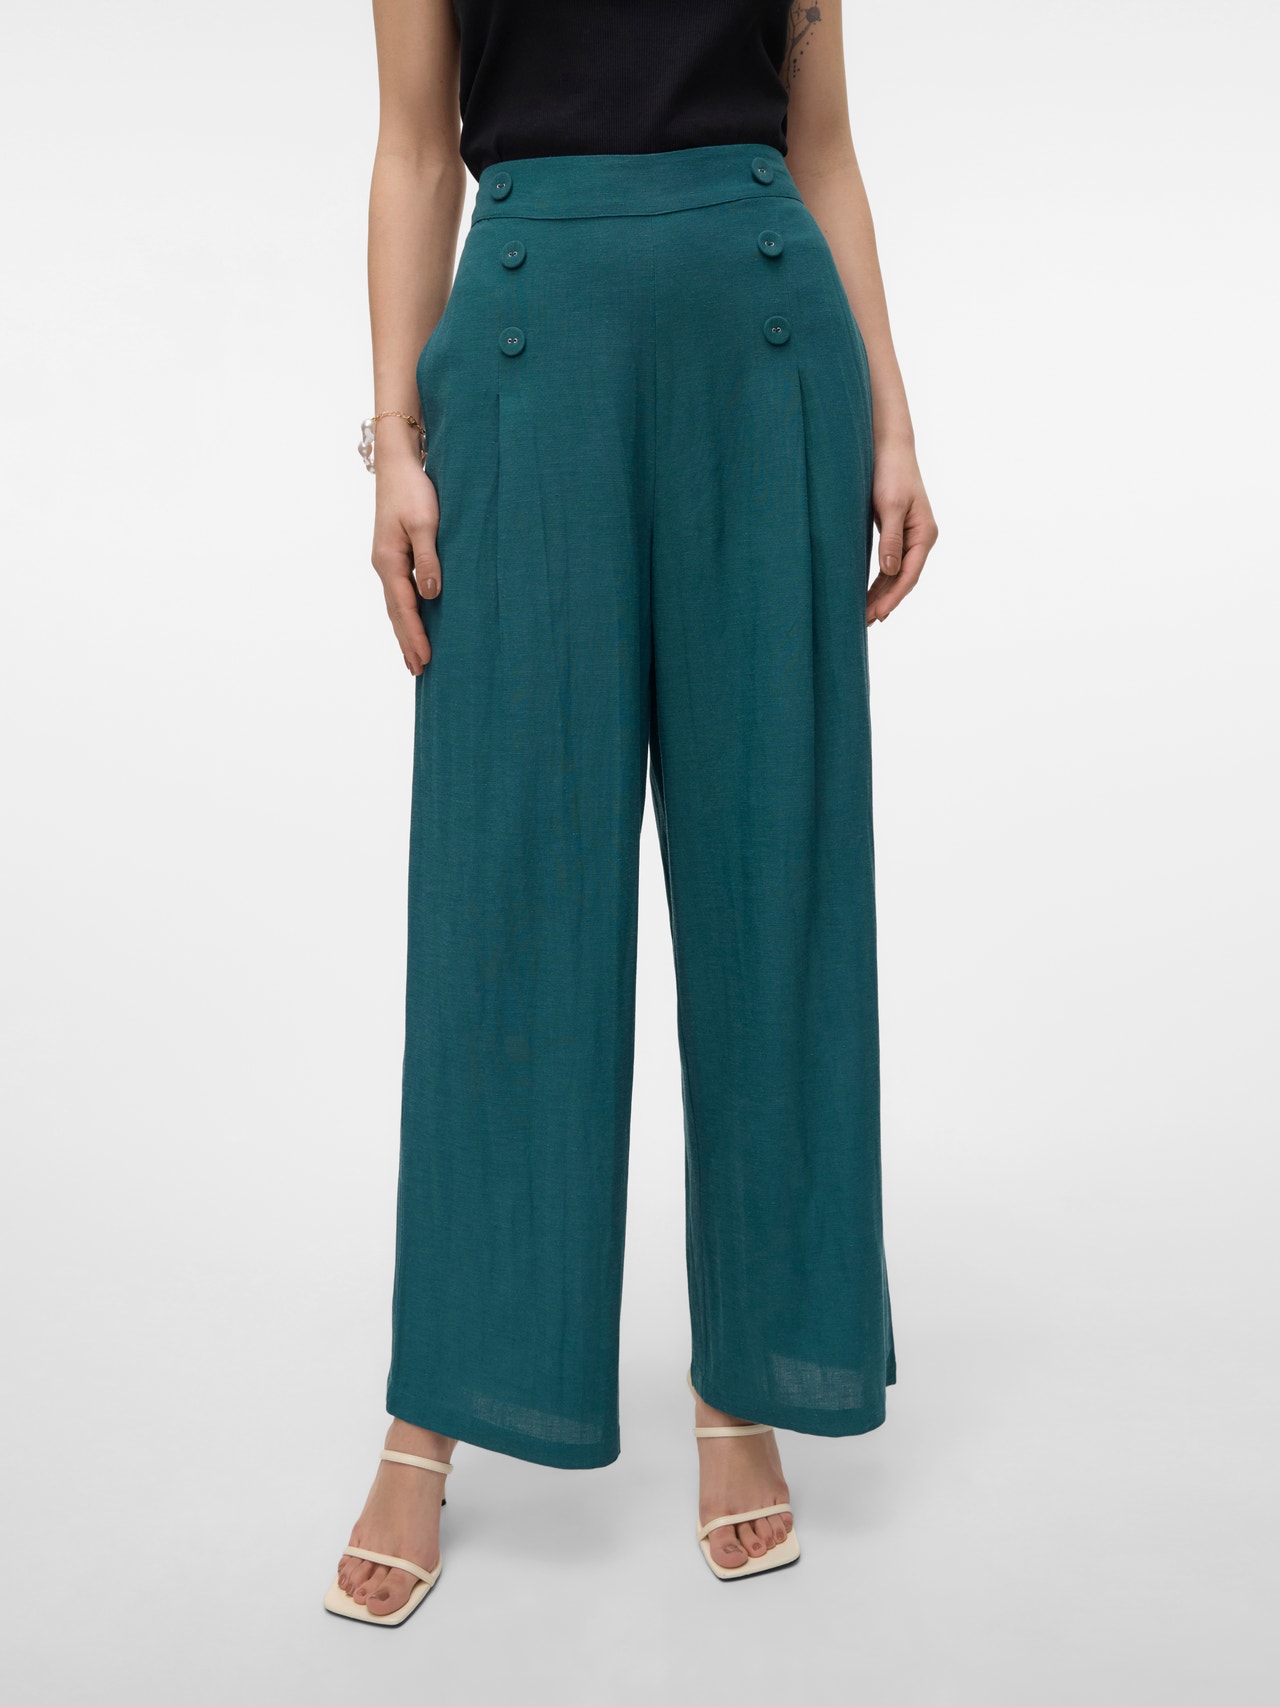 Vero Moda VMGISELLE Spodnie -Balsam - 10317813